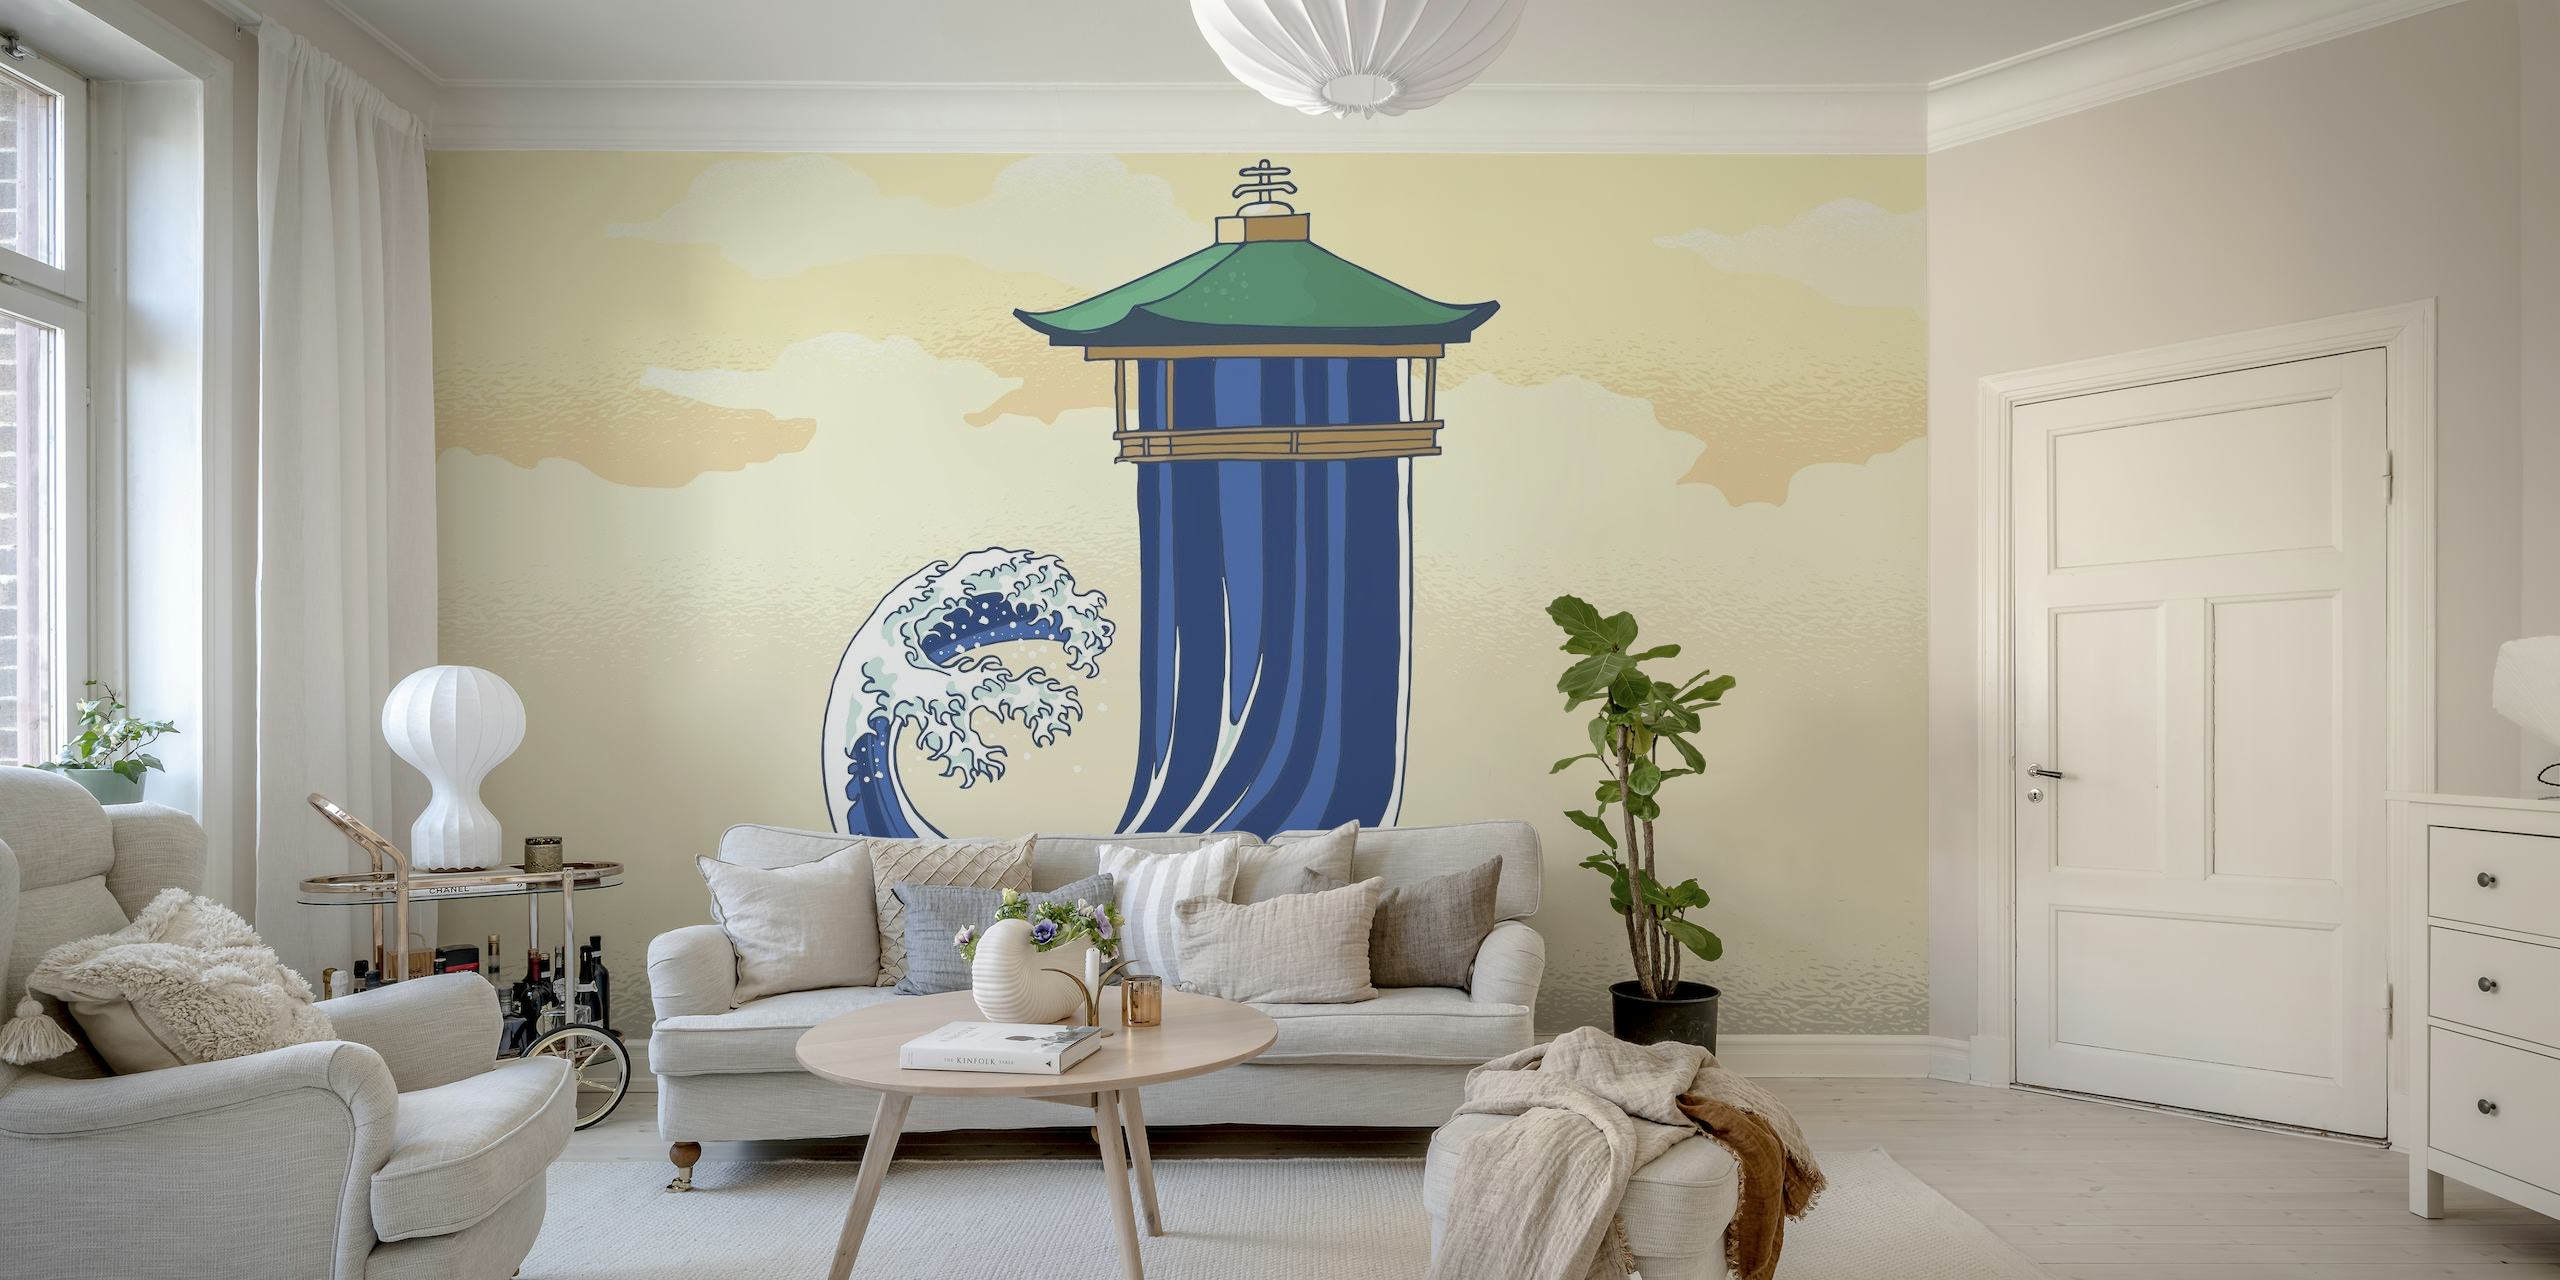 Tyylitelty japanilainen pagodi ja valtameren aaltomaalaus pastelliväreissä